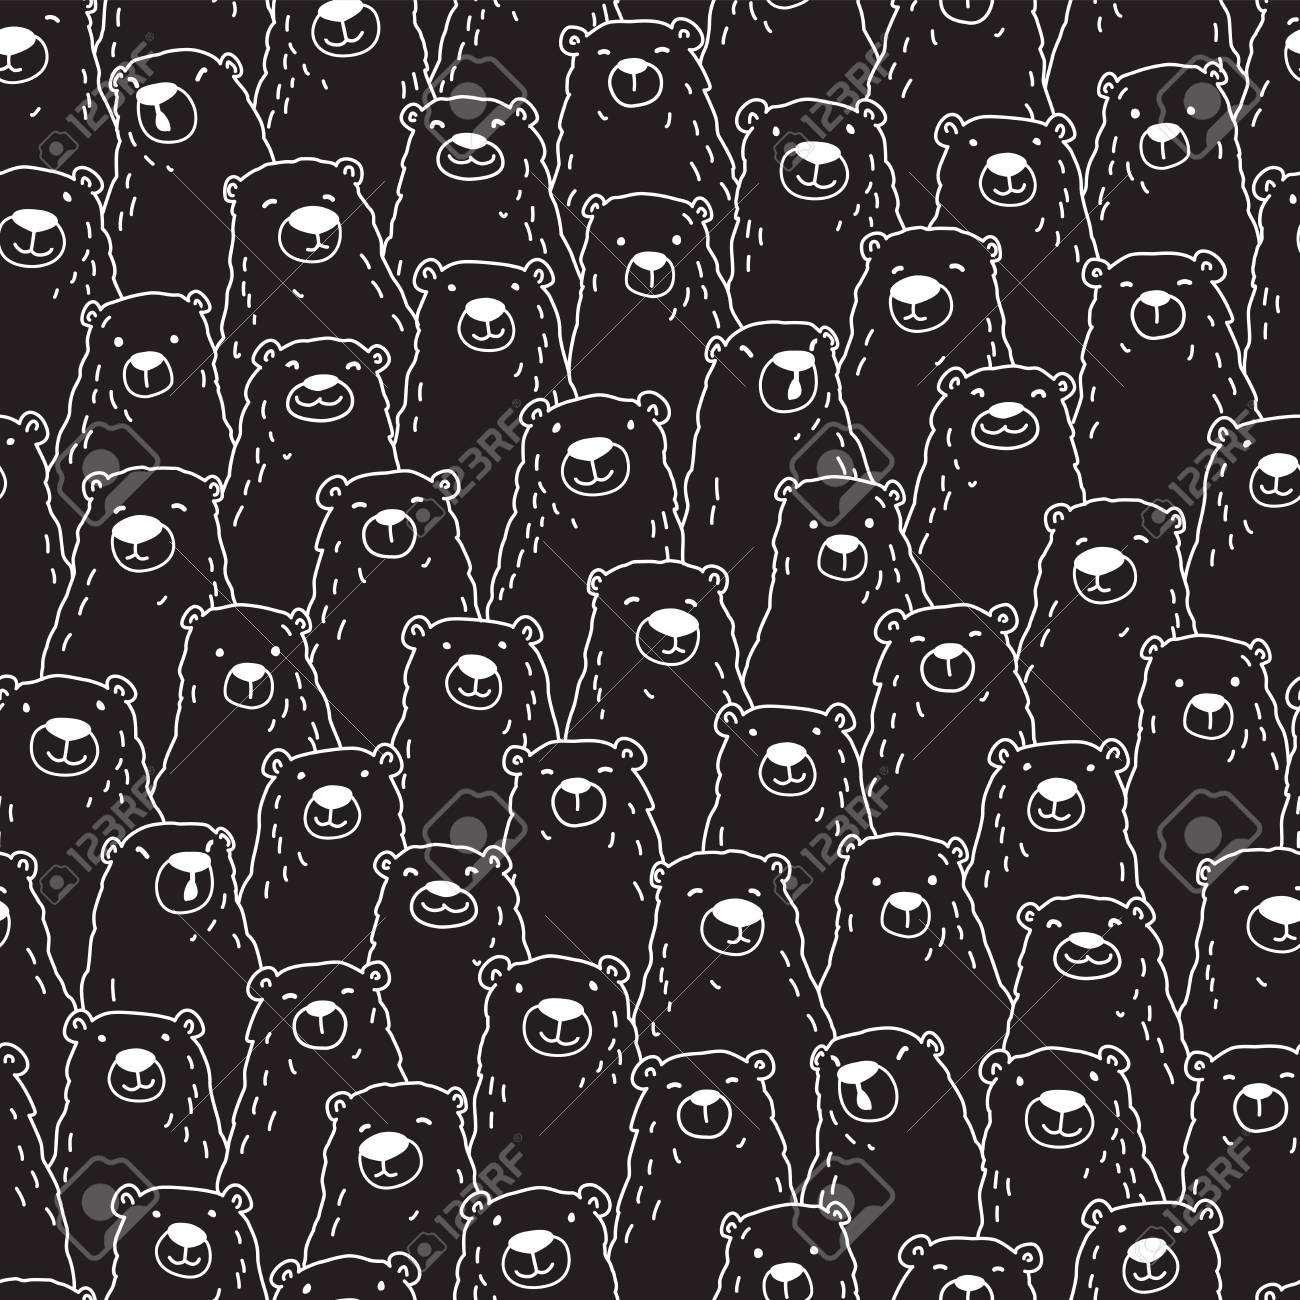 12+] Dark Doodle Wallpapers - WallpaperSafari